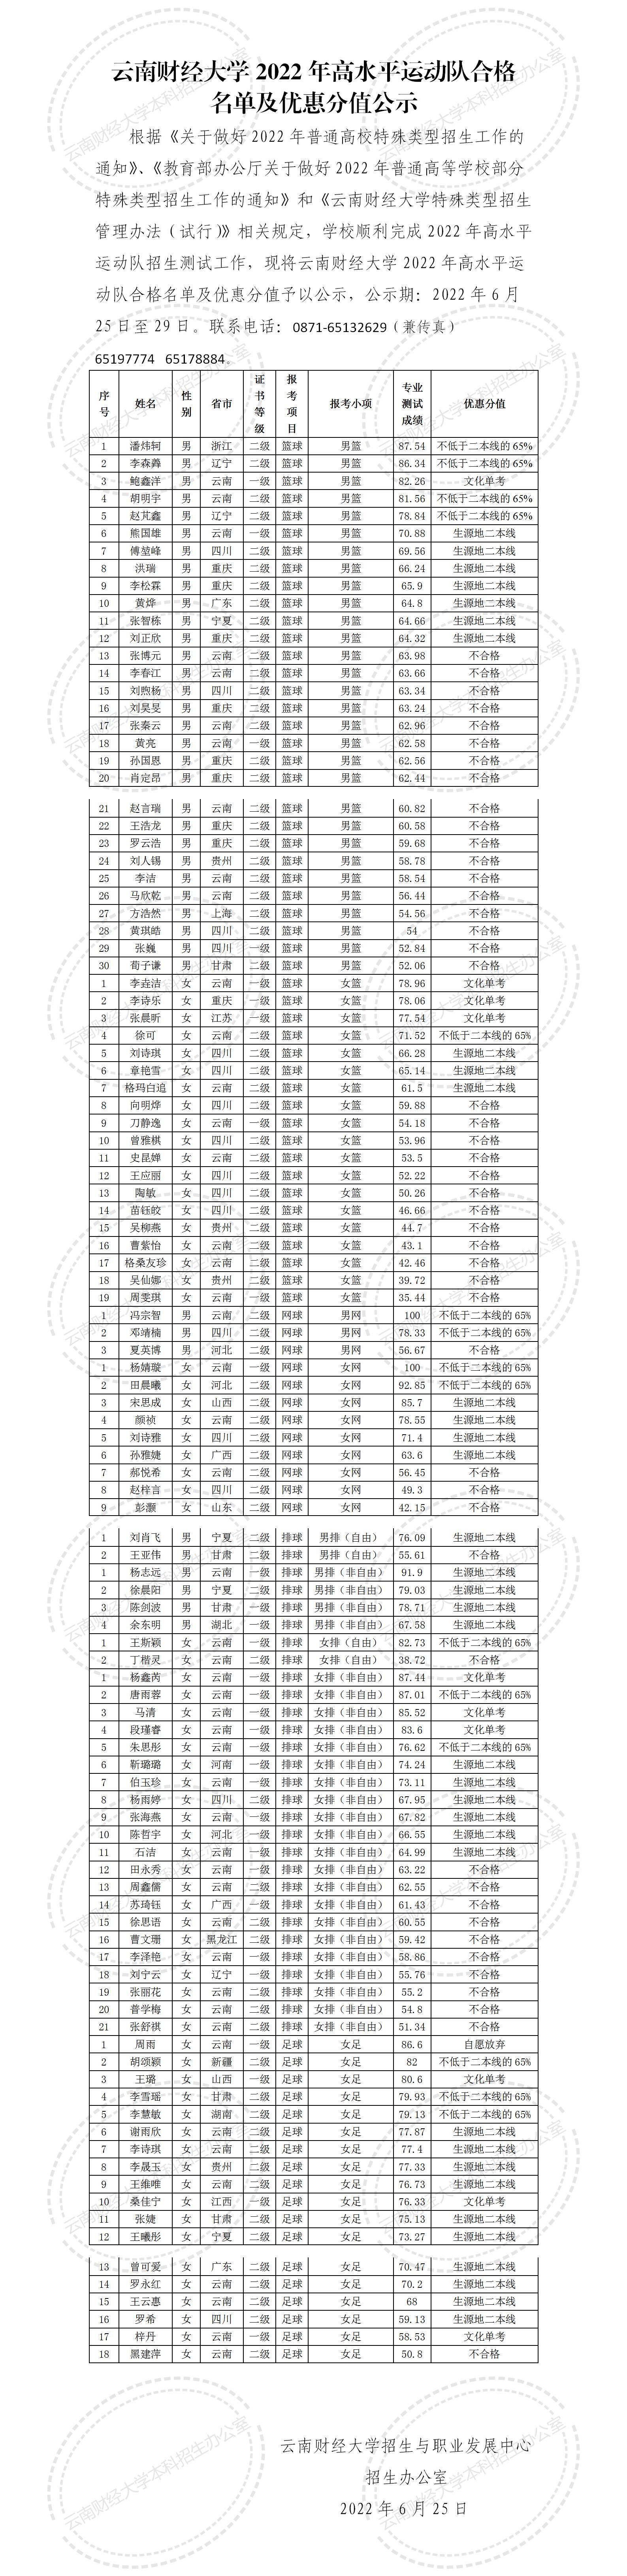 云南财经大学2022年高水平运动队合格名单及优惠分值公示_01.jpg